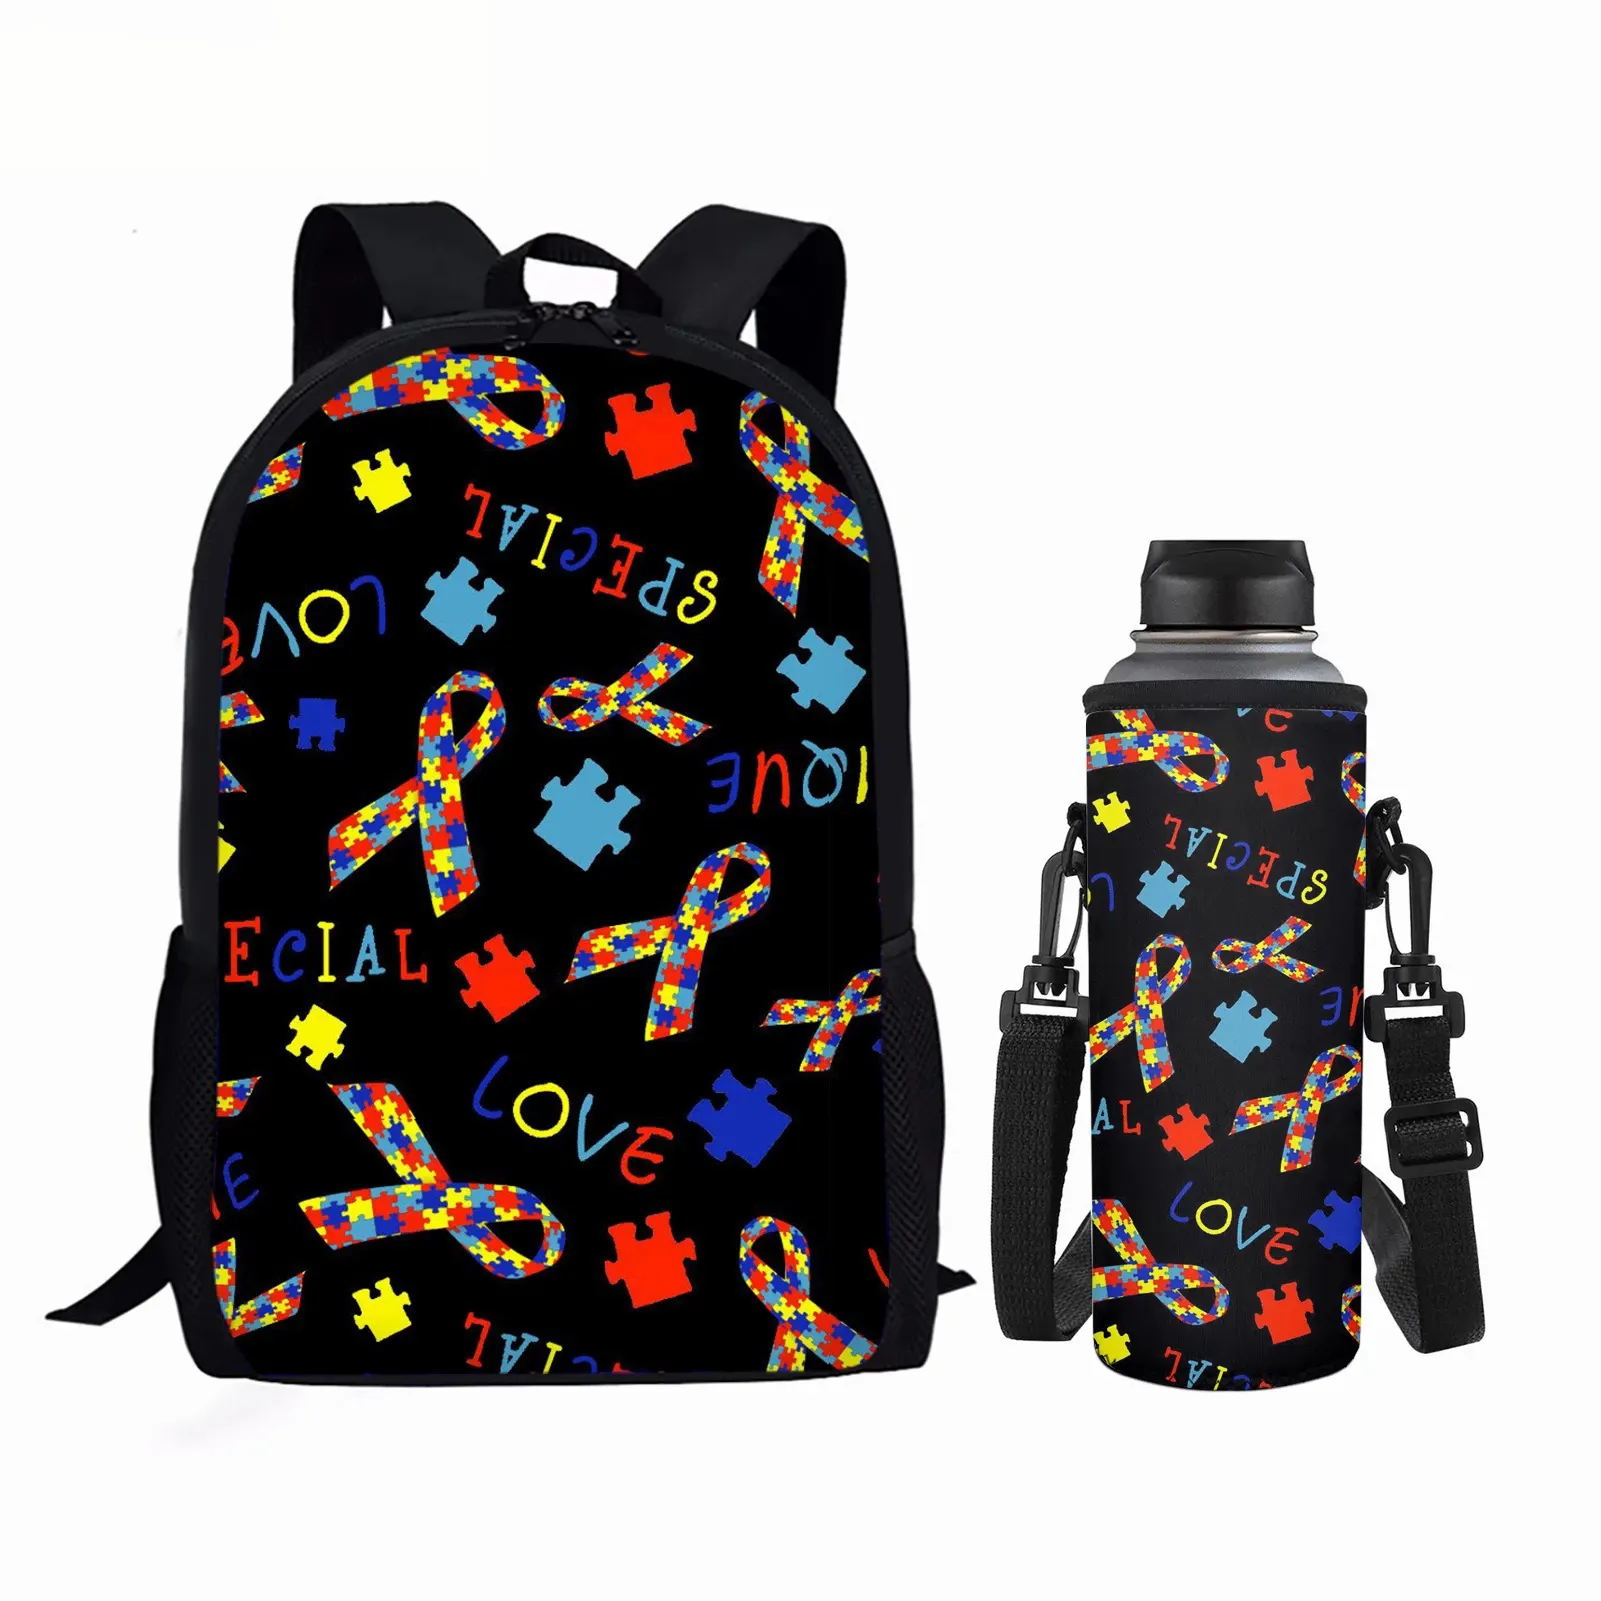 Otizm farkındalık desen 2 adet okul çantası ve su şişesi taşıyıcı çanta seti toptan için özel baskı sırt çantası genç Satchel